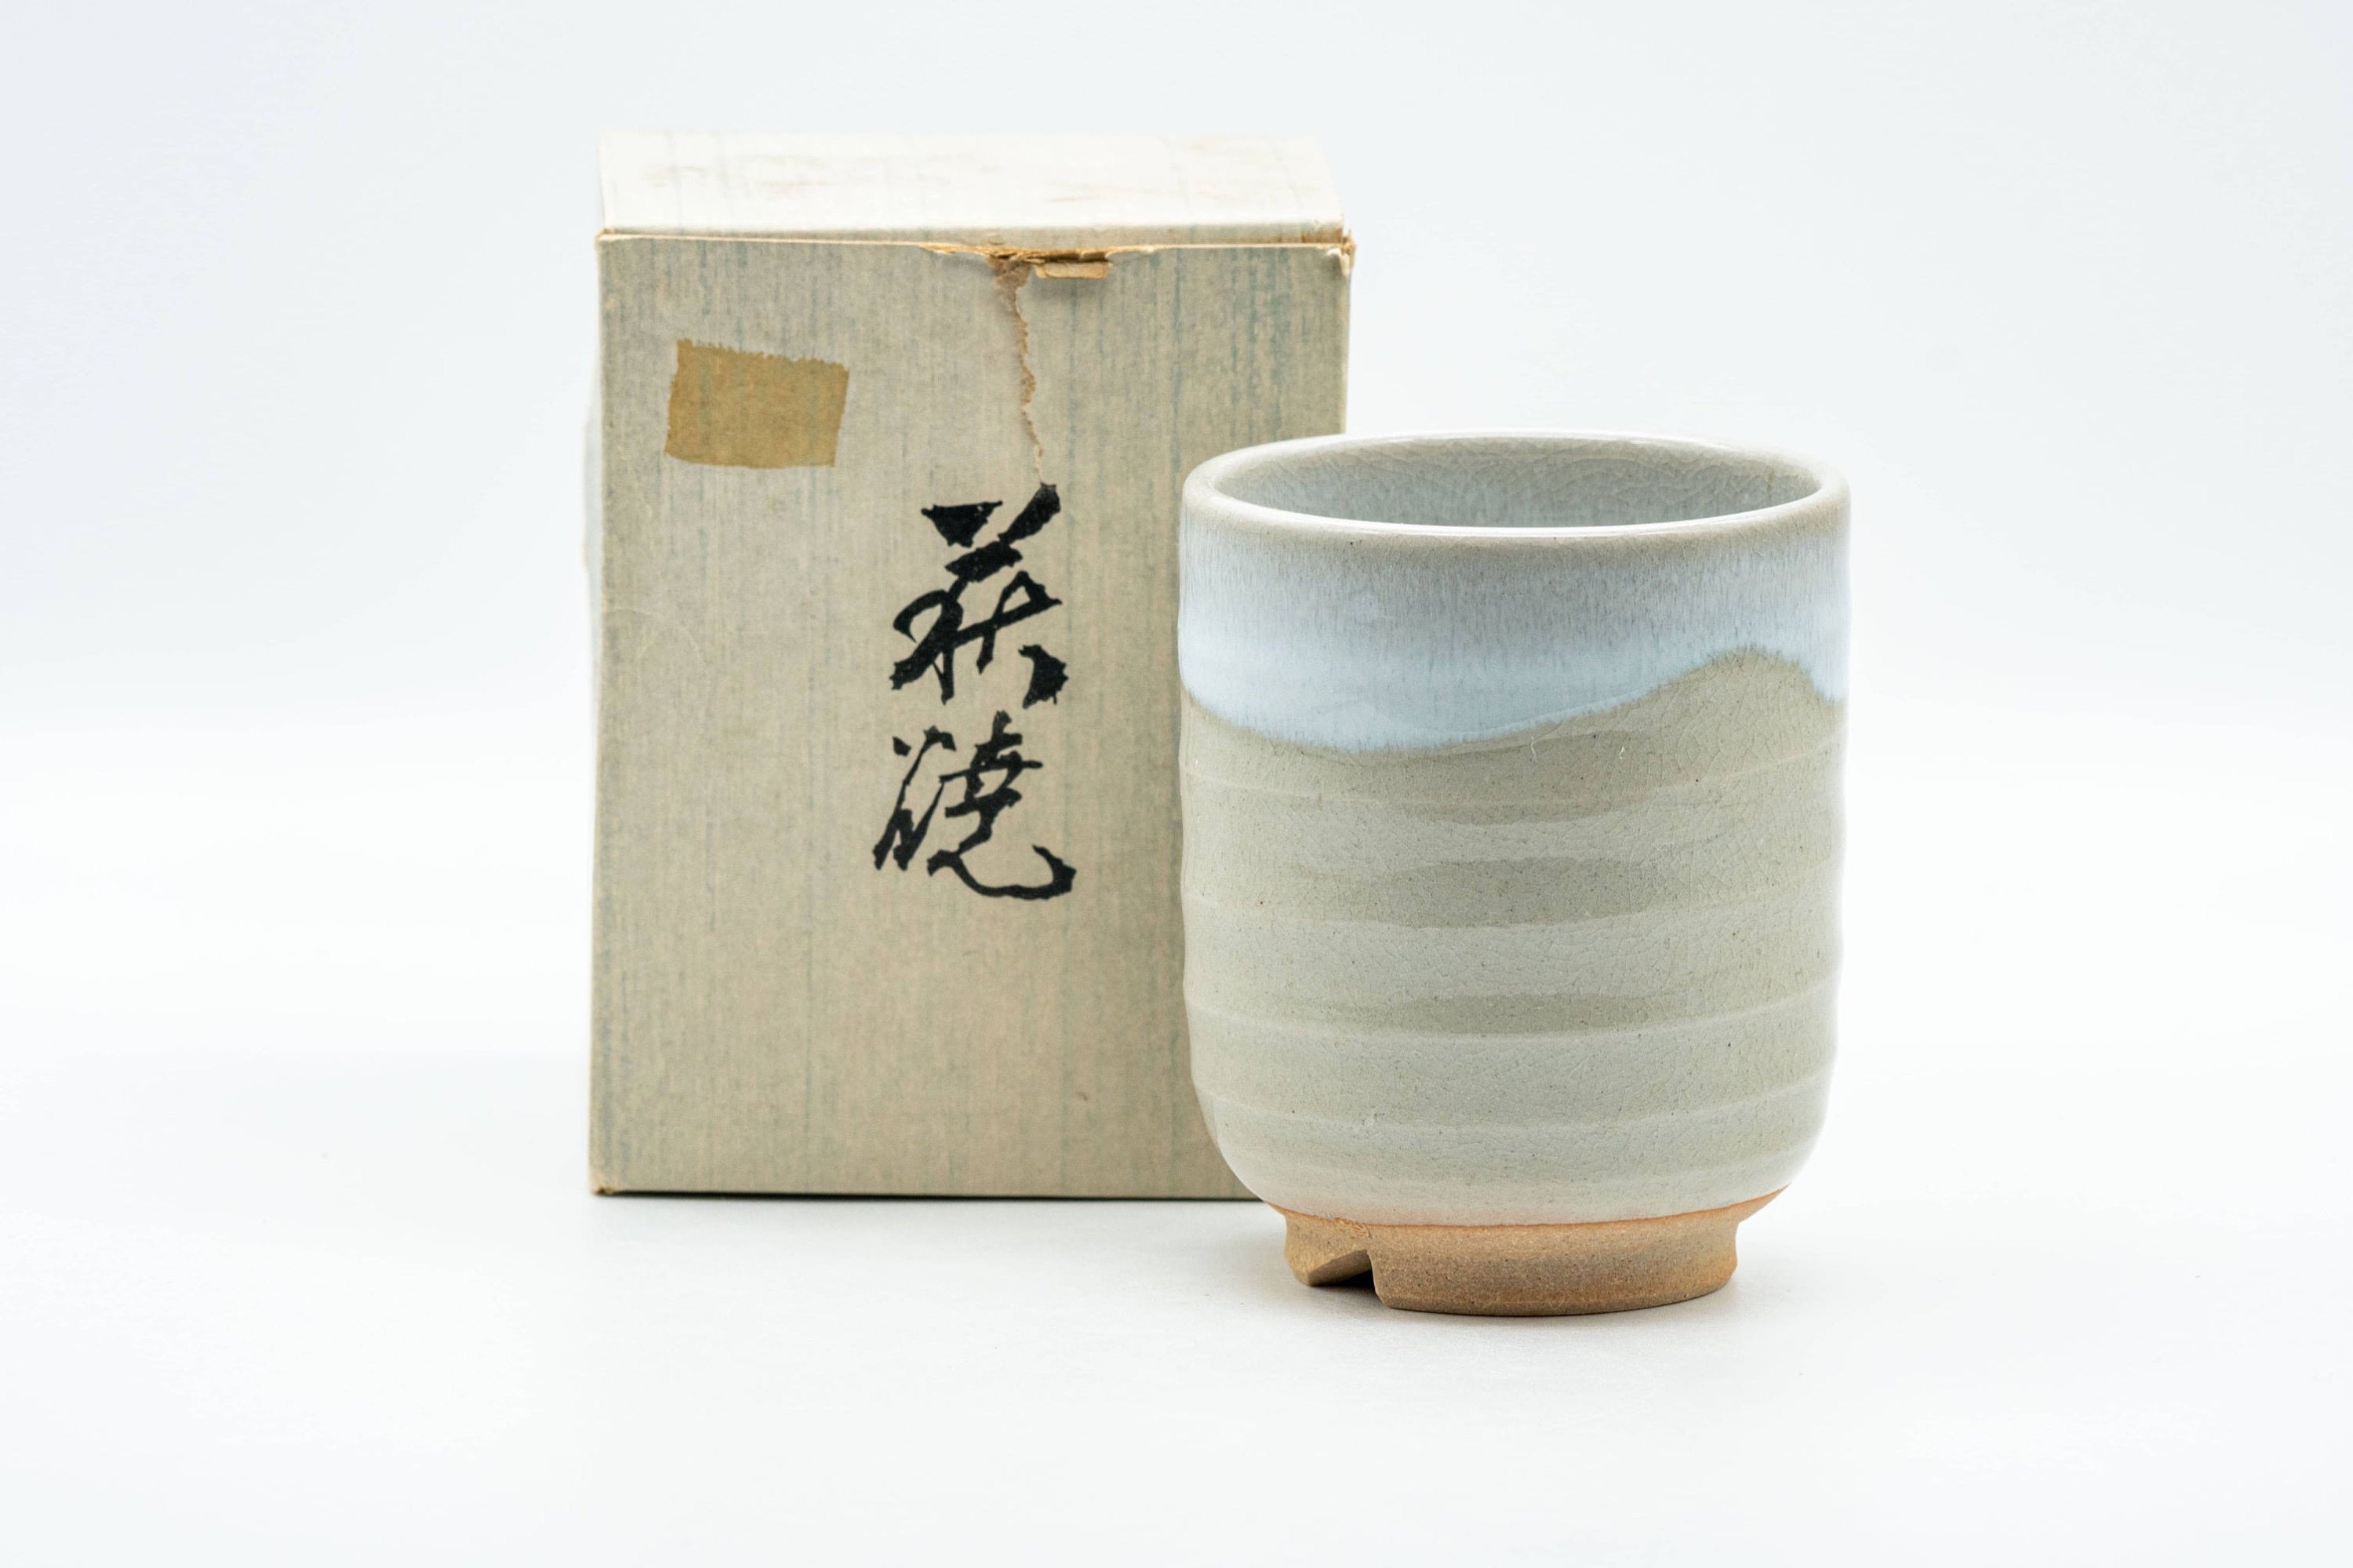 Japanese Teacup - 萩殿窯 Hagiden Kiln Hagi-yaki Yunomi - 150ml